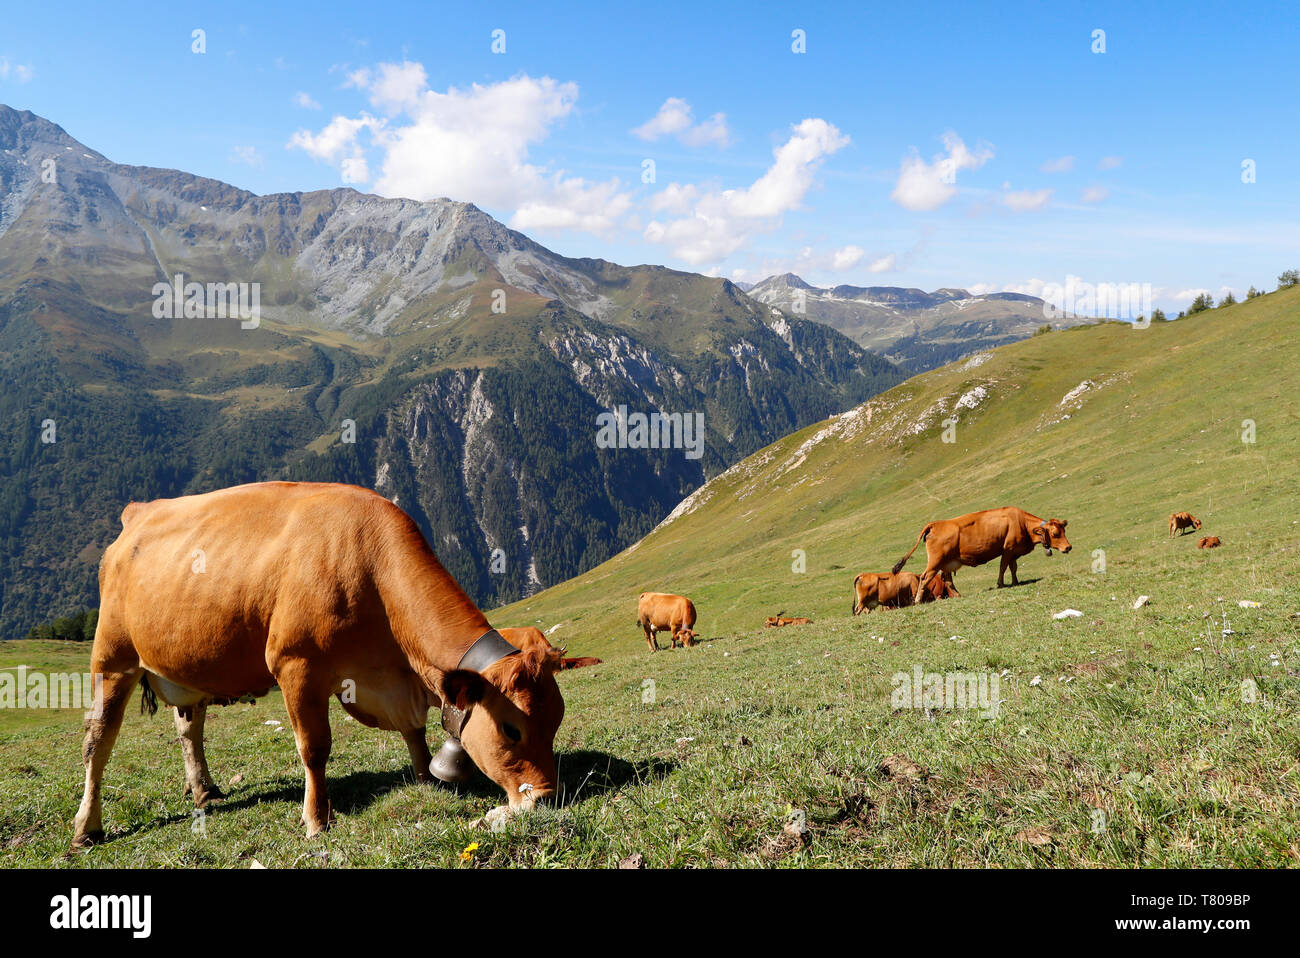 La leche utilizada en el queso Beaufort Tarine proviene de las vacas que pastan en los altos pastos, Peisey Nancroix, Savoie, Alpes franceses, Francia, Europa Foto de stock